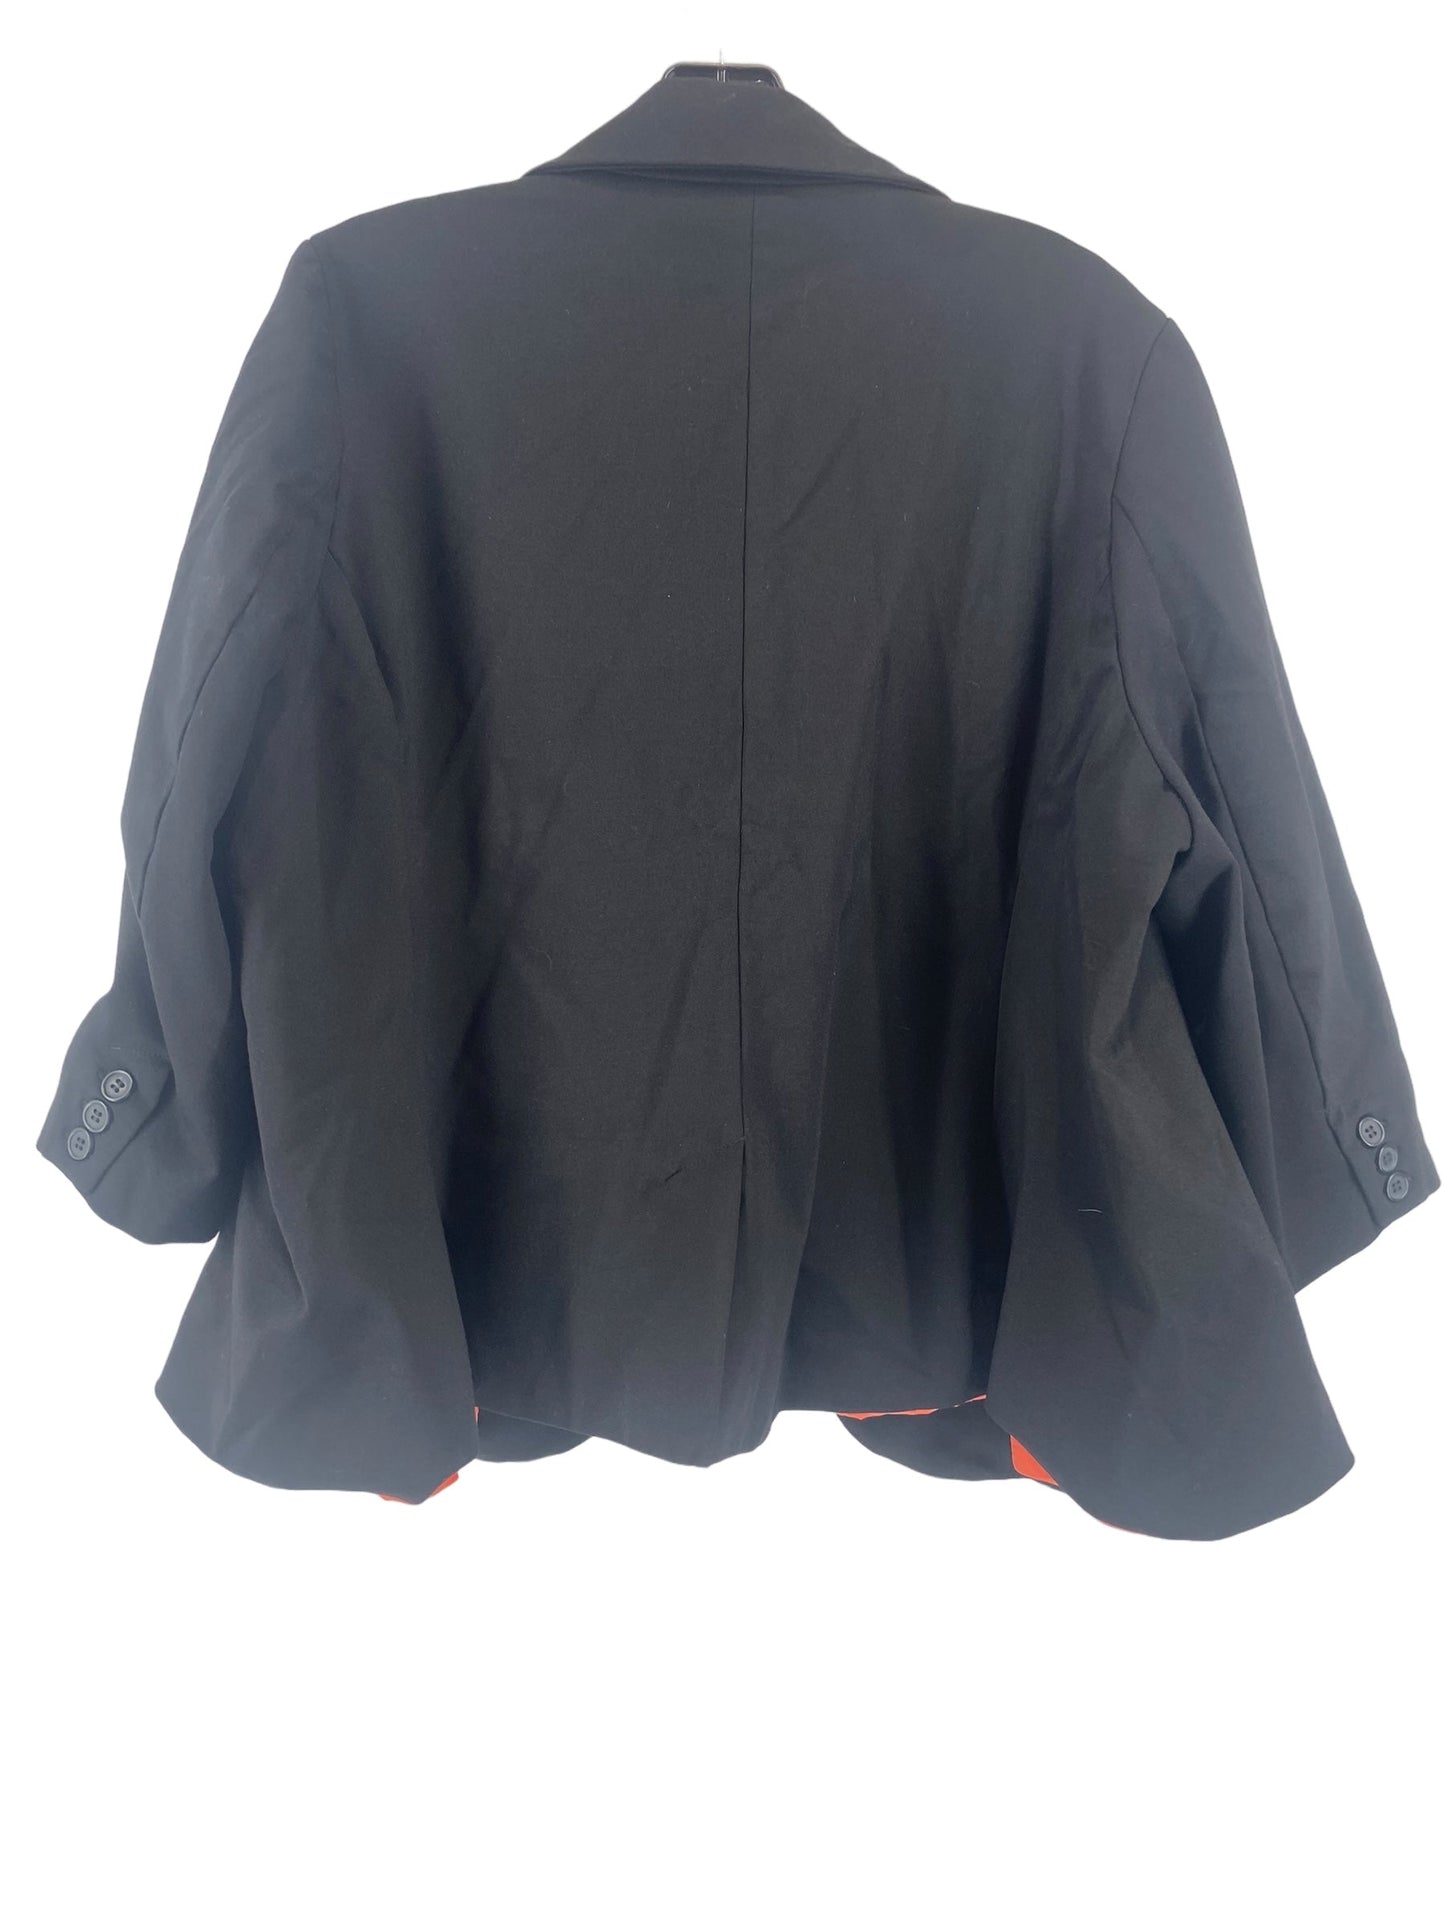 Black Blazer Modcloth, Size 2x